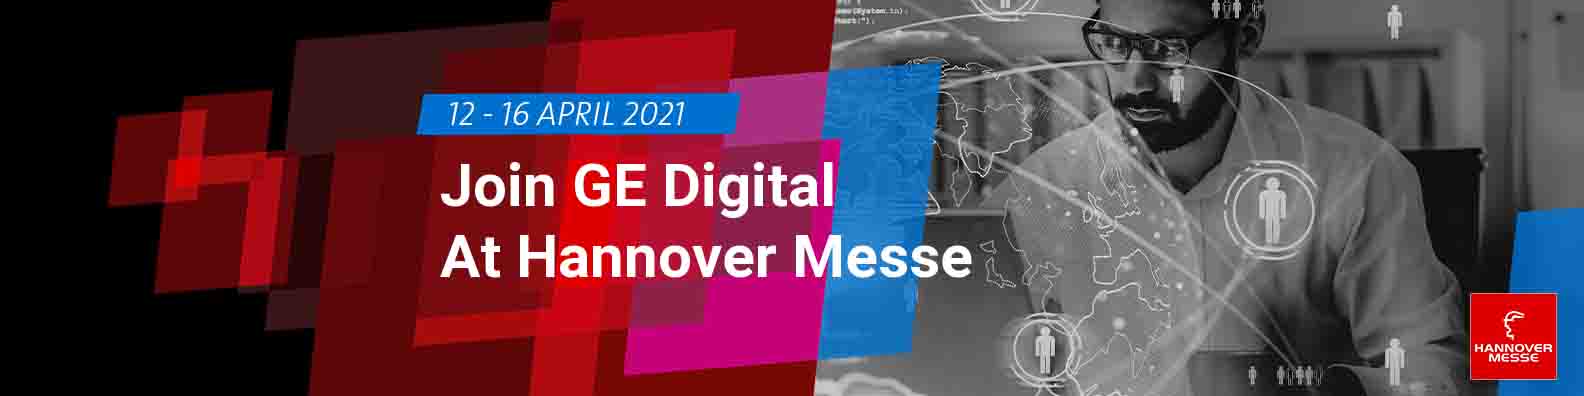 Hannover Messe 2021 | GE Digital